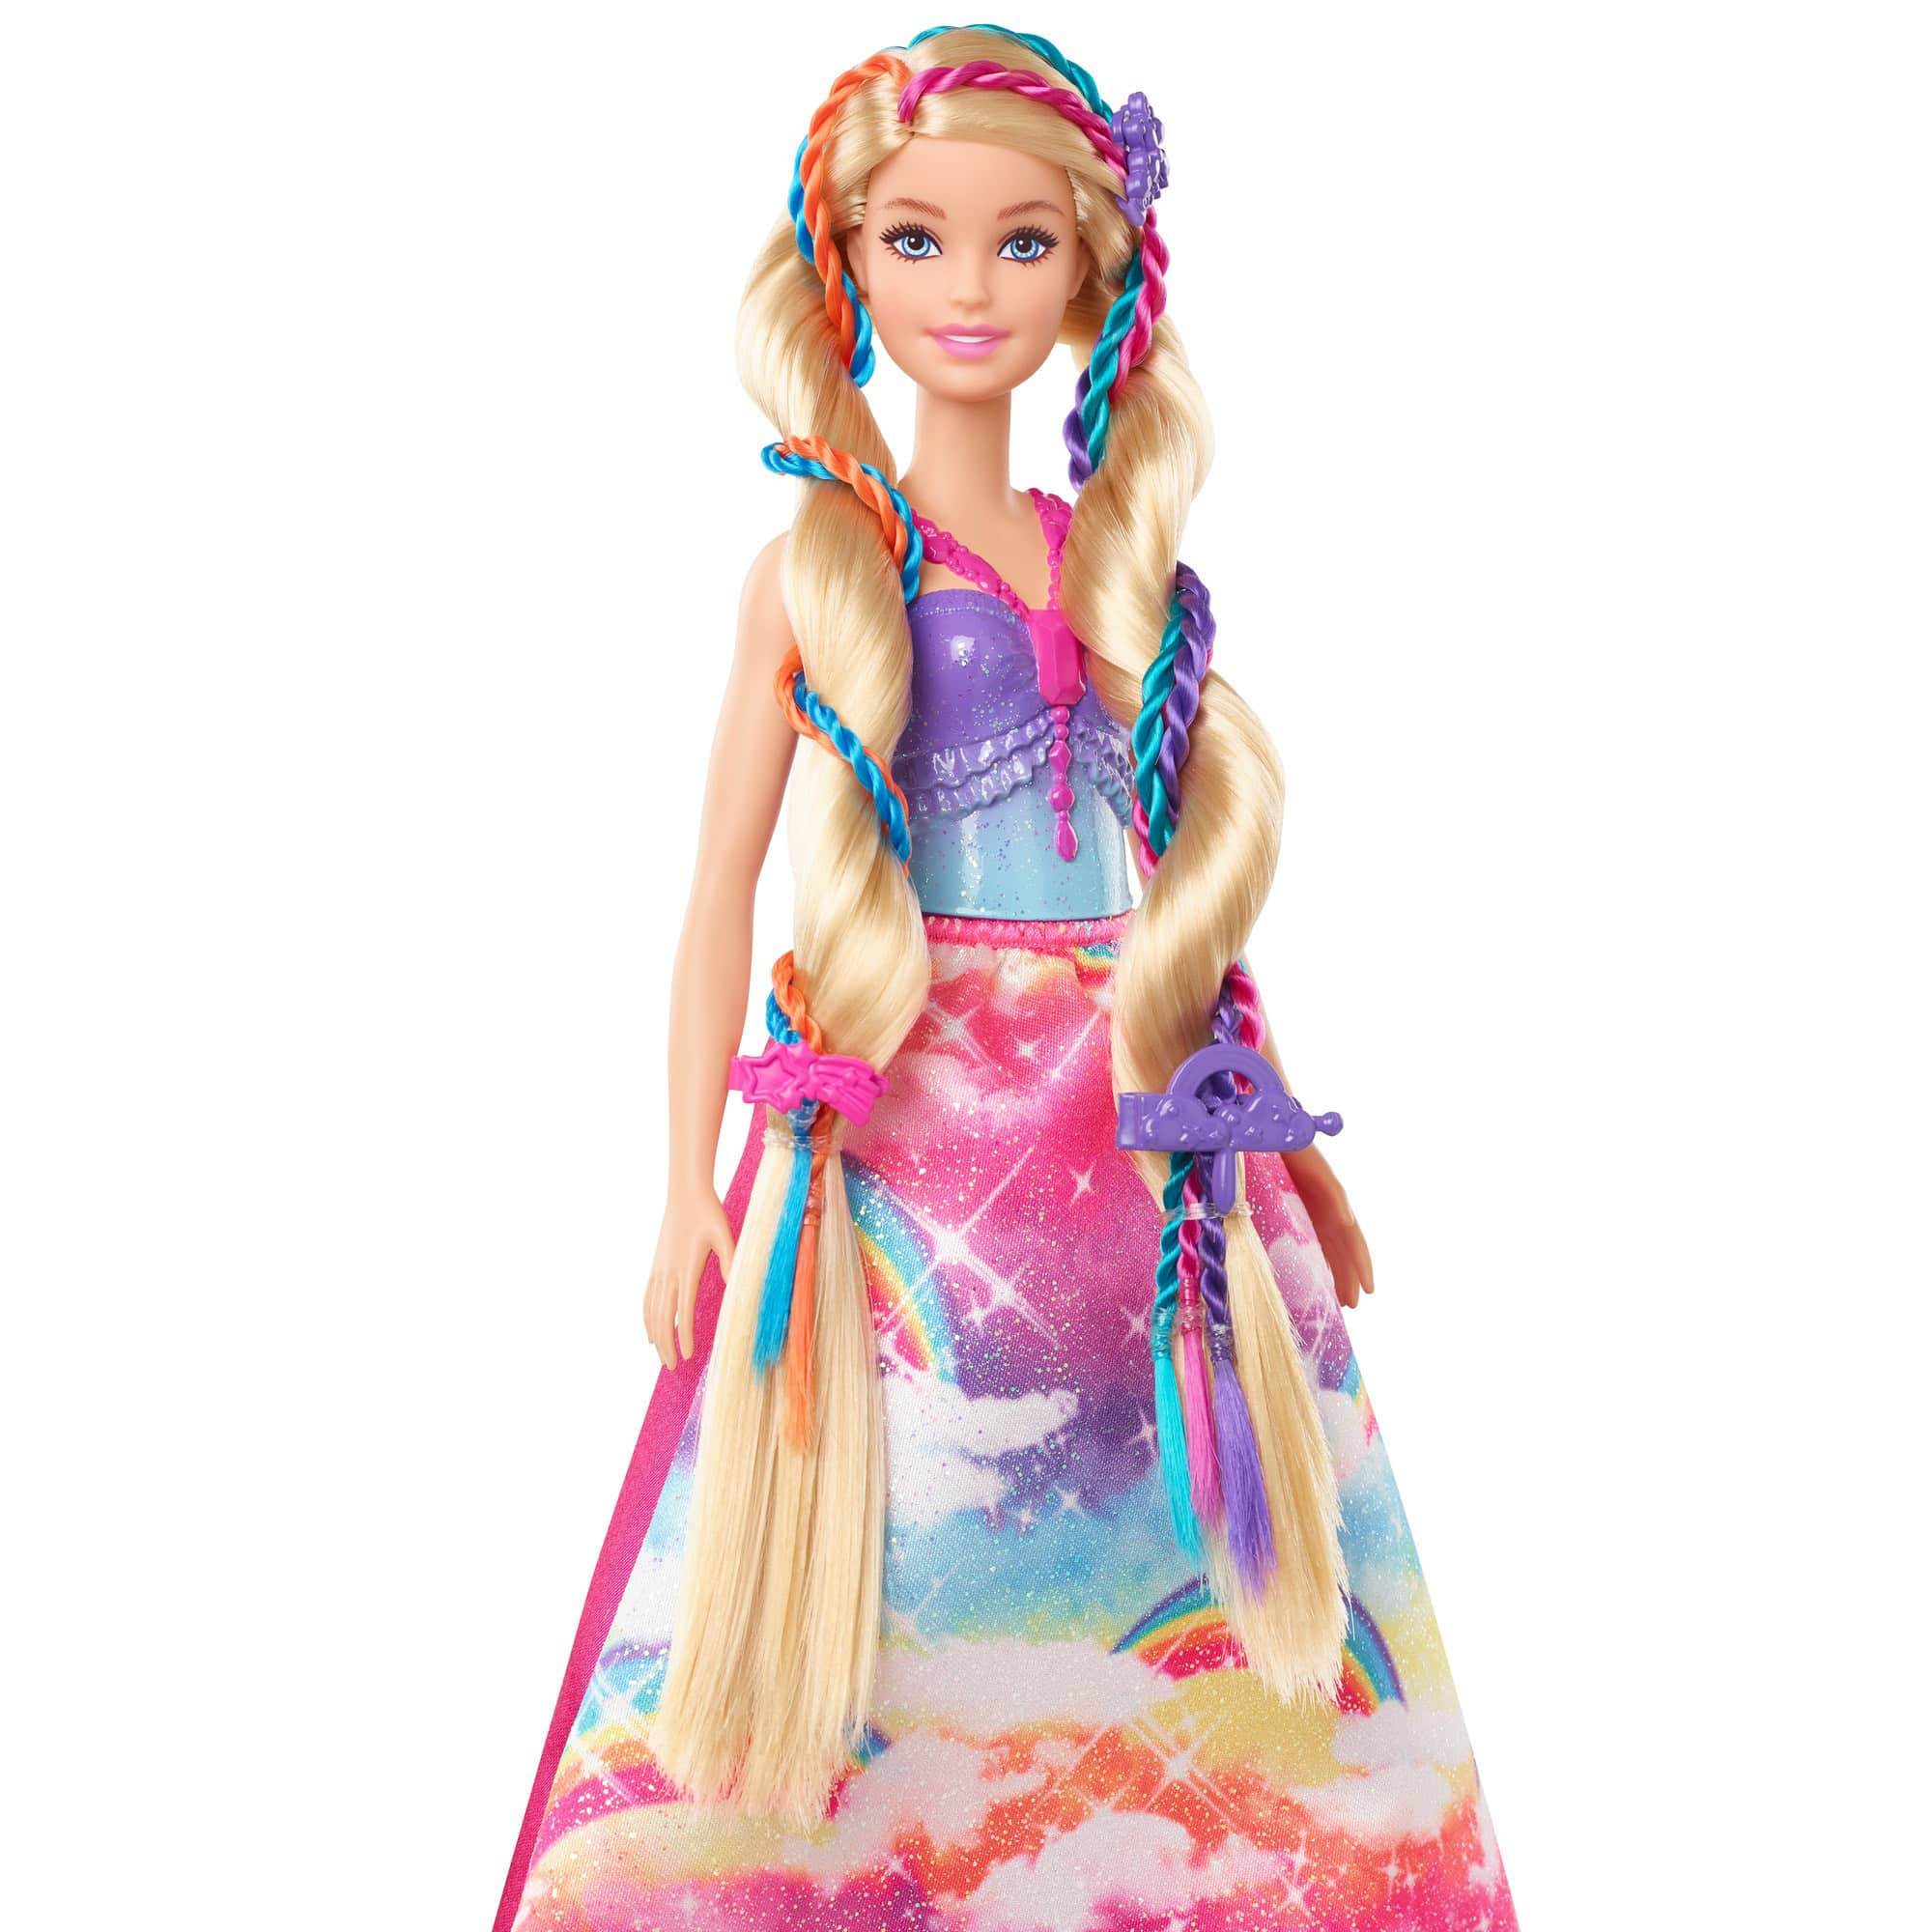 Barbie Dreamtopia - Hair Princess Doll